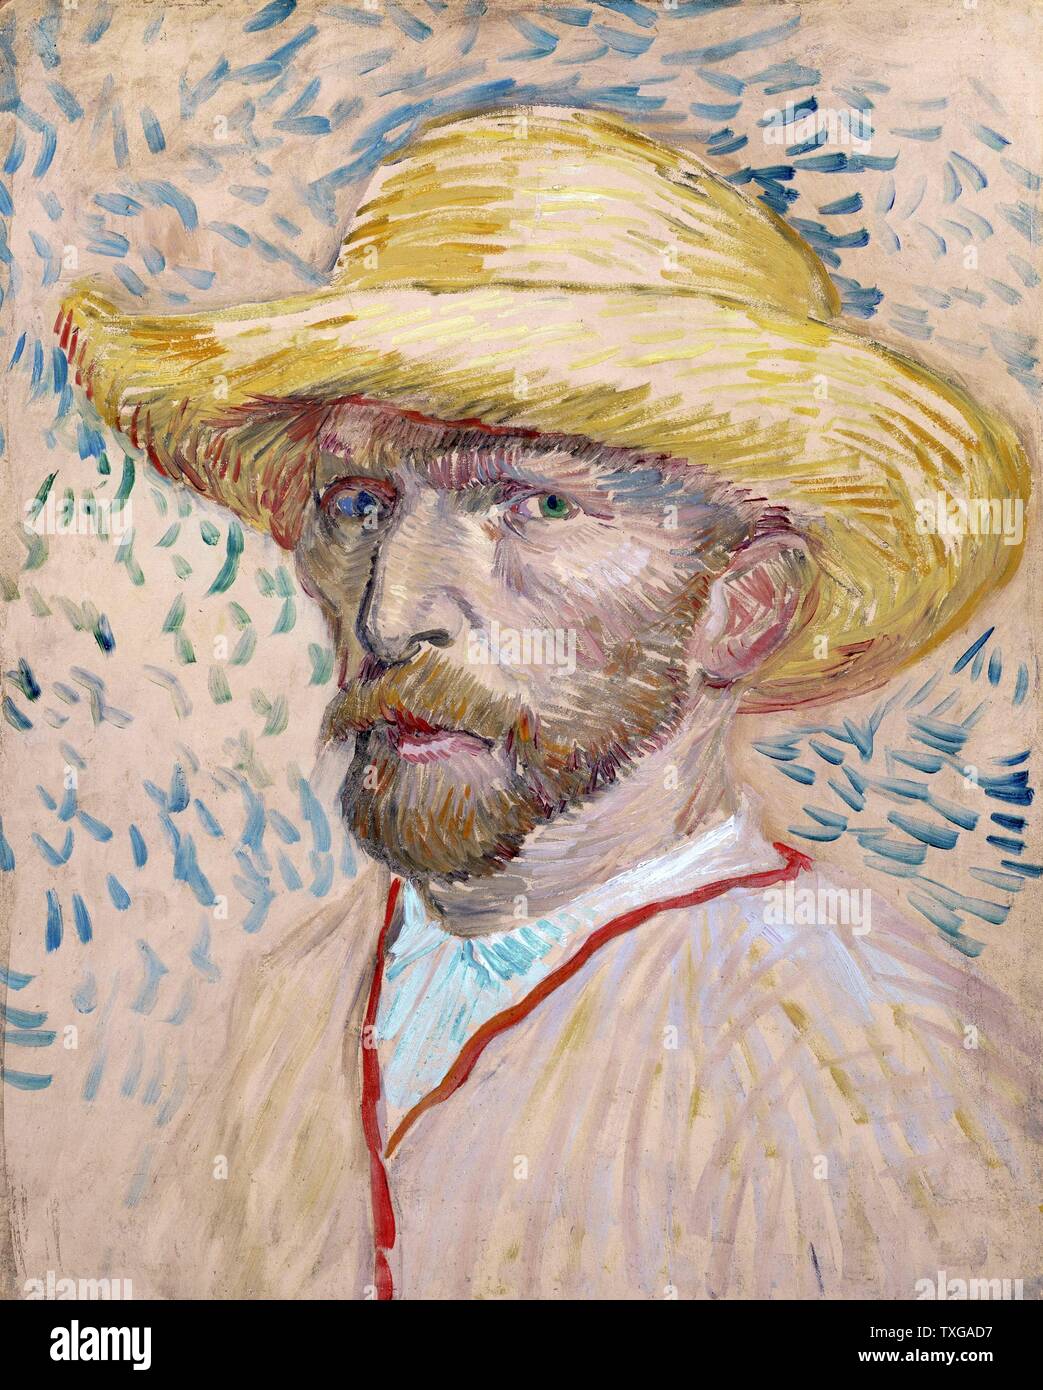 Vincent van Gogh autoportrait à l'école Néerlandaise avec chapeau de paille Septembre 1887 Huile sur carton (40,9 x 32,8 cm) Amsterdam, Van Gogh Museum Banque D'Images